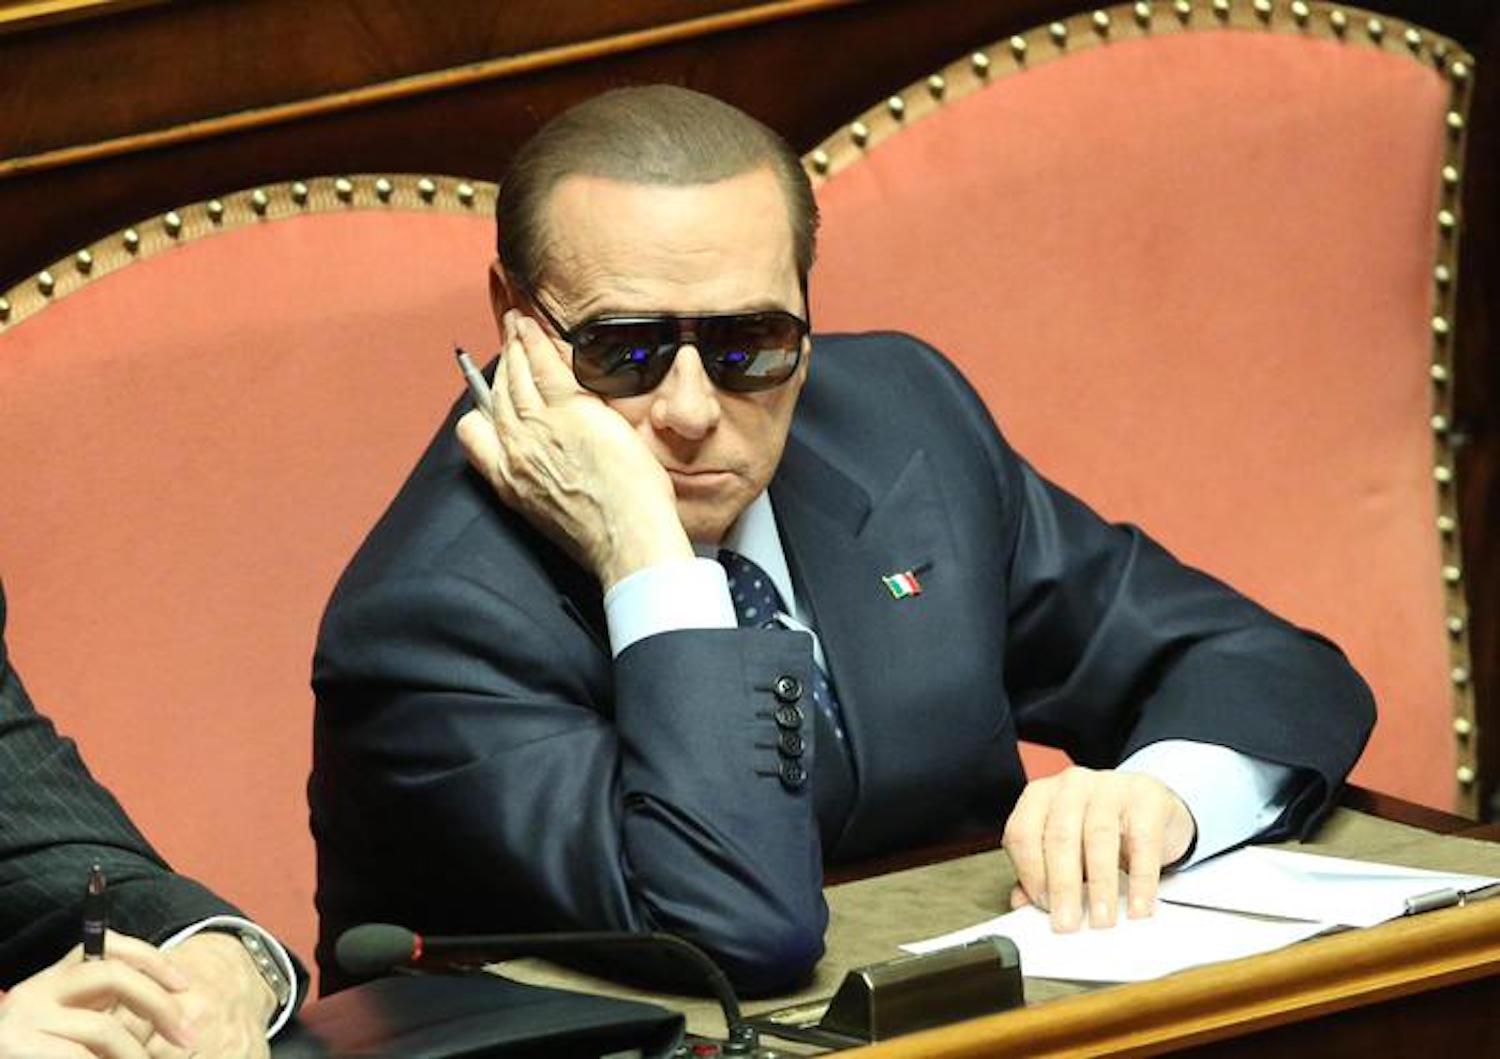 Operazione scoiattolo sospesa? Berlusconi smentisce e rilancia, ma Lega e Fdi si tengono pronti